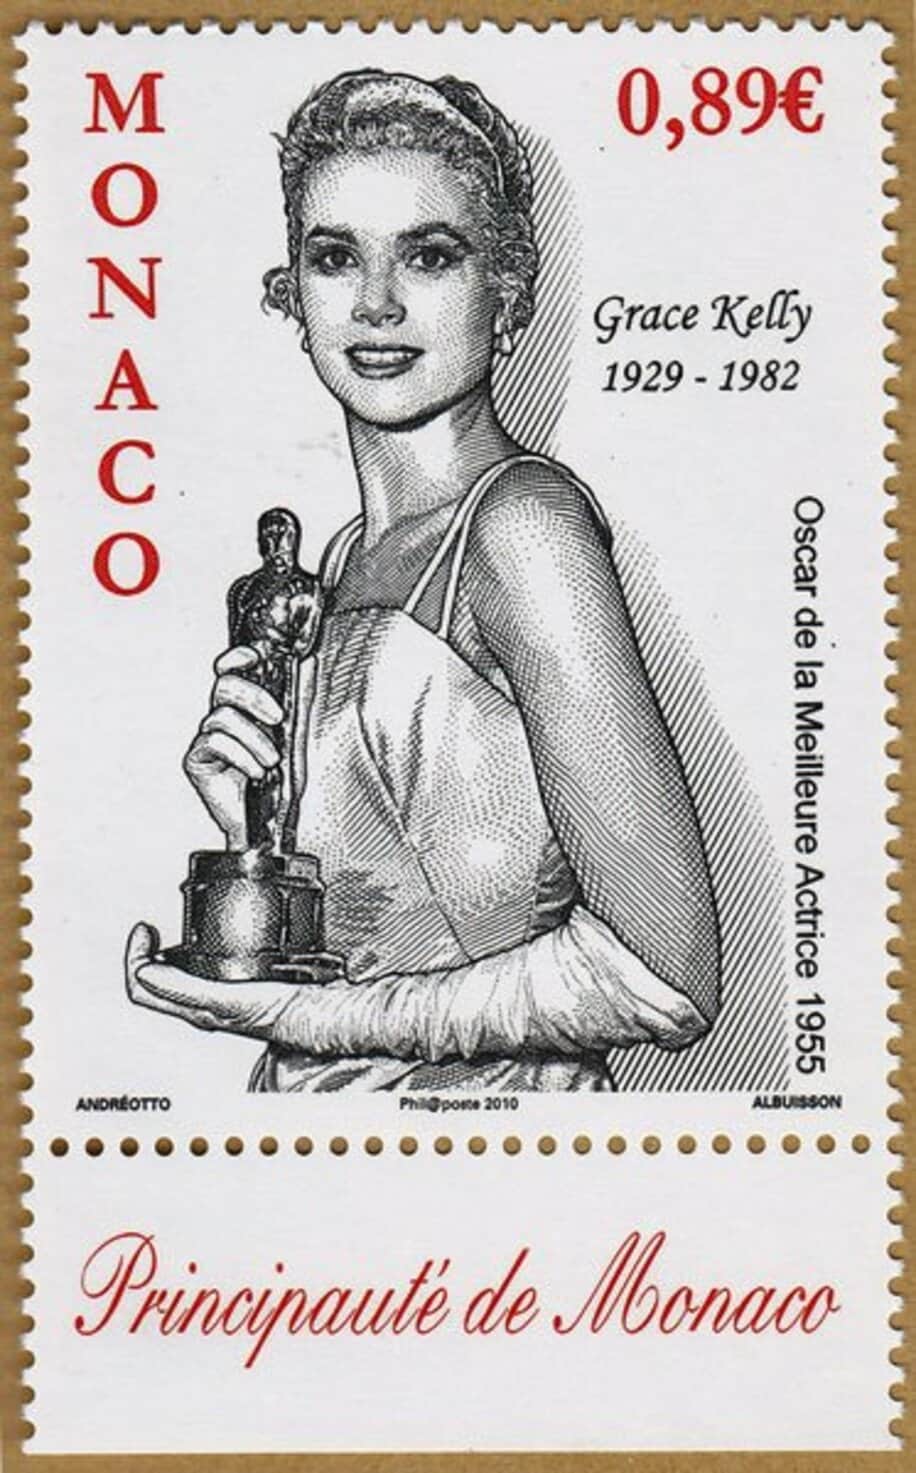  グレース・ケリーの切手